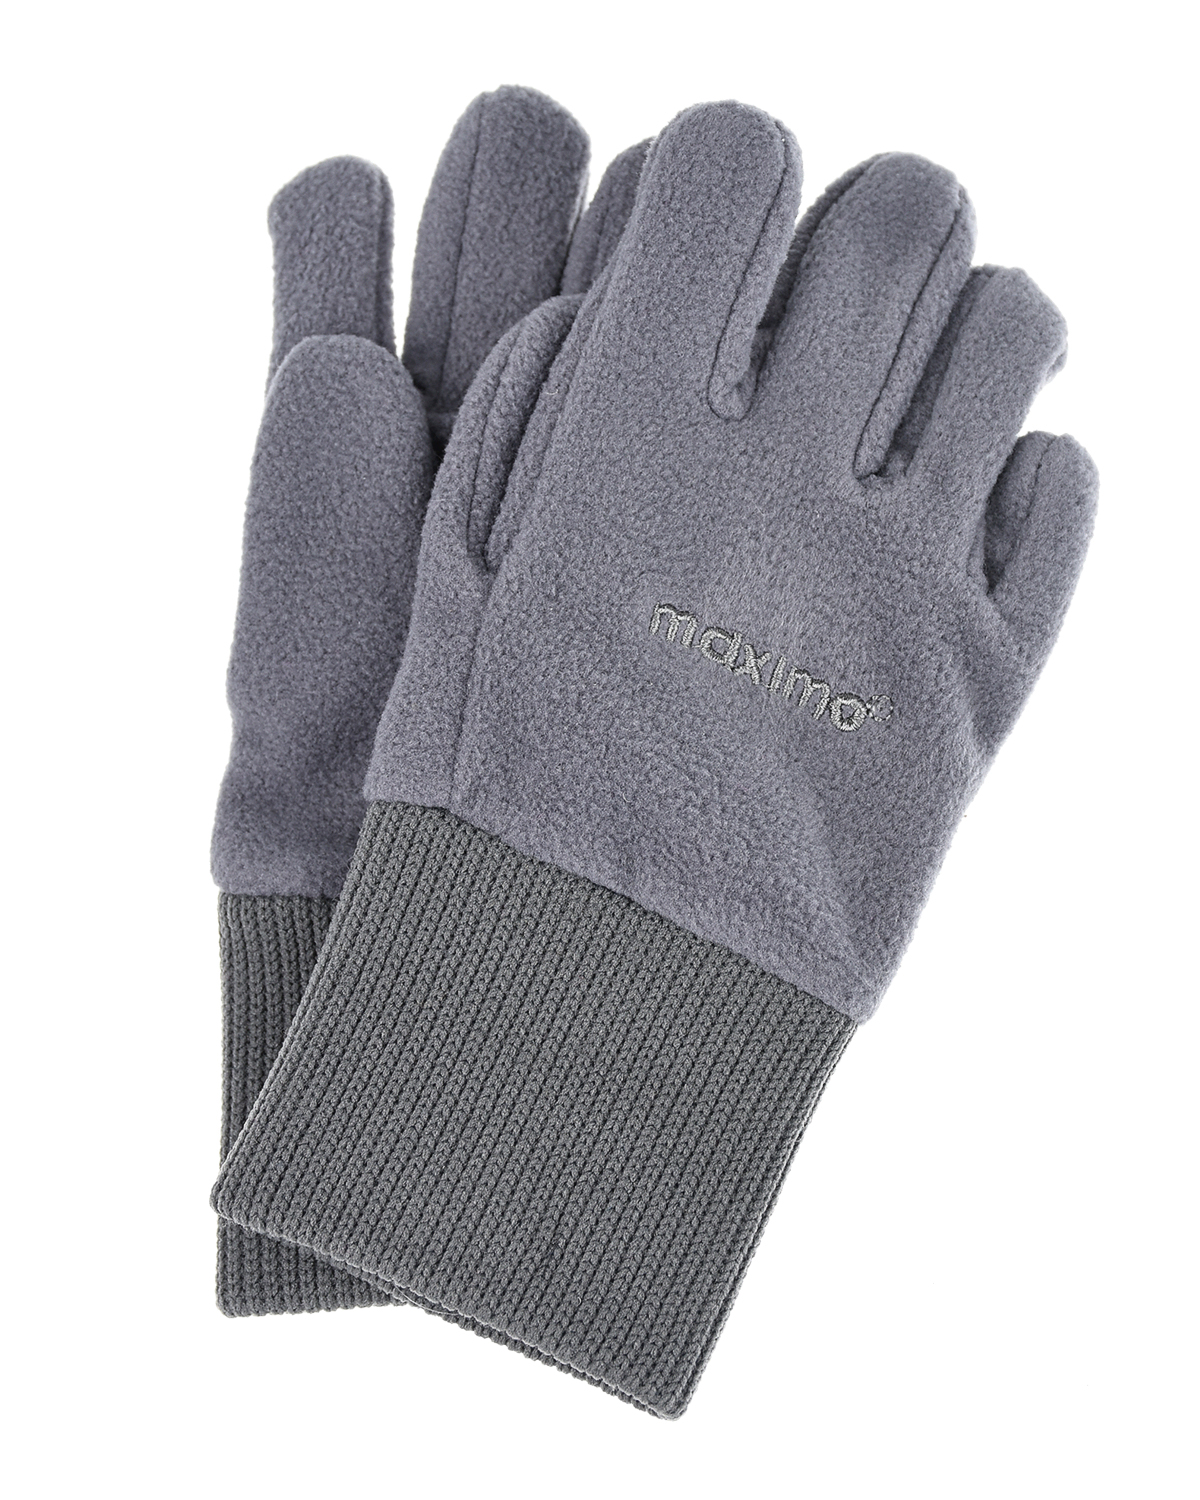 Базовые перчатки для мальчиков MaxiMo детские, размер 2, цвет серый - фото 1